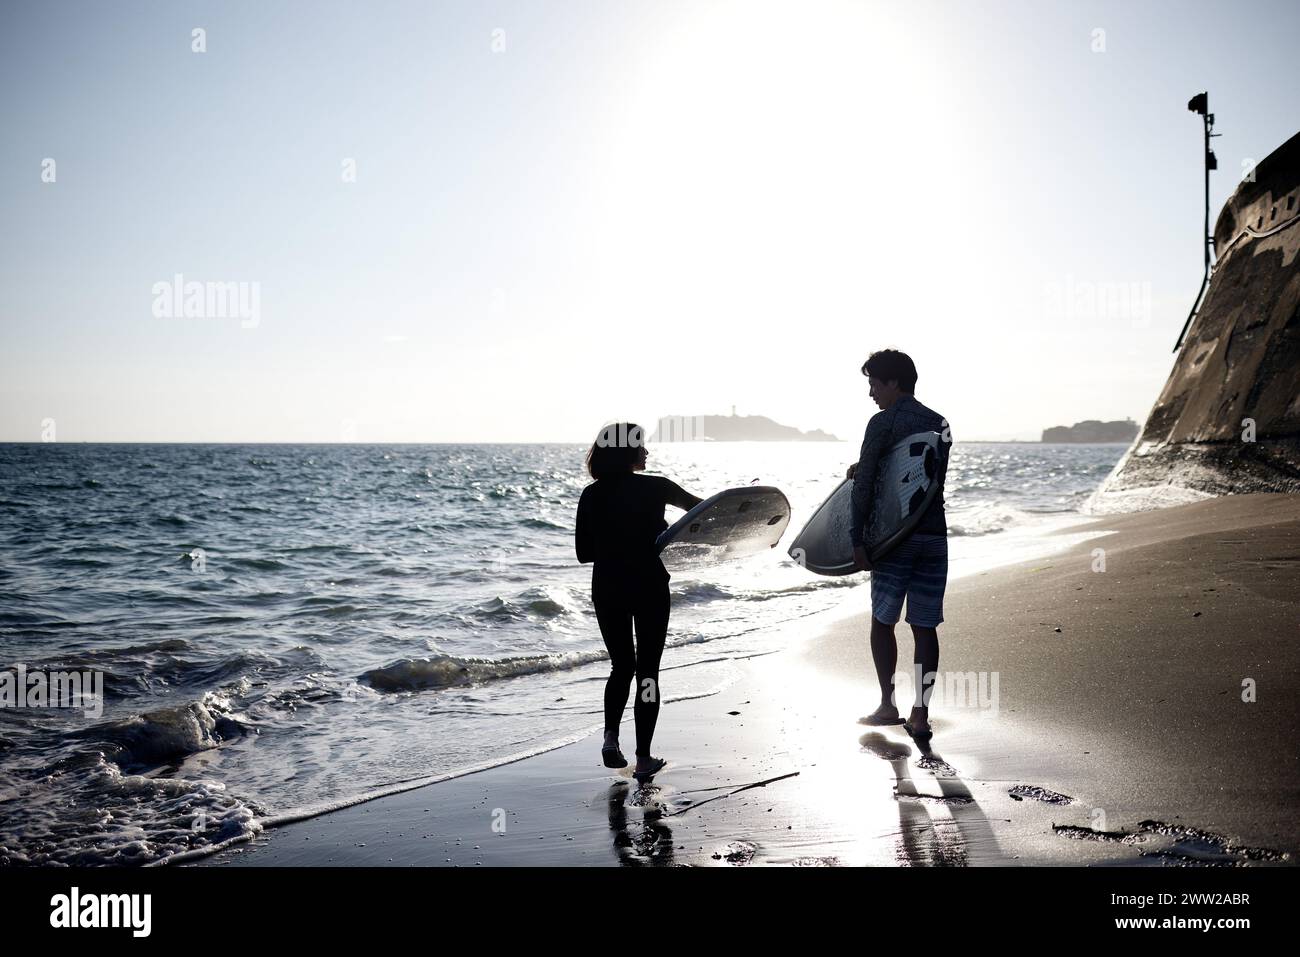 Un homme et une femme debout sur la plage tenant des planches de surf Banque D'Images